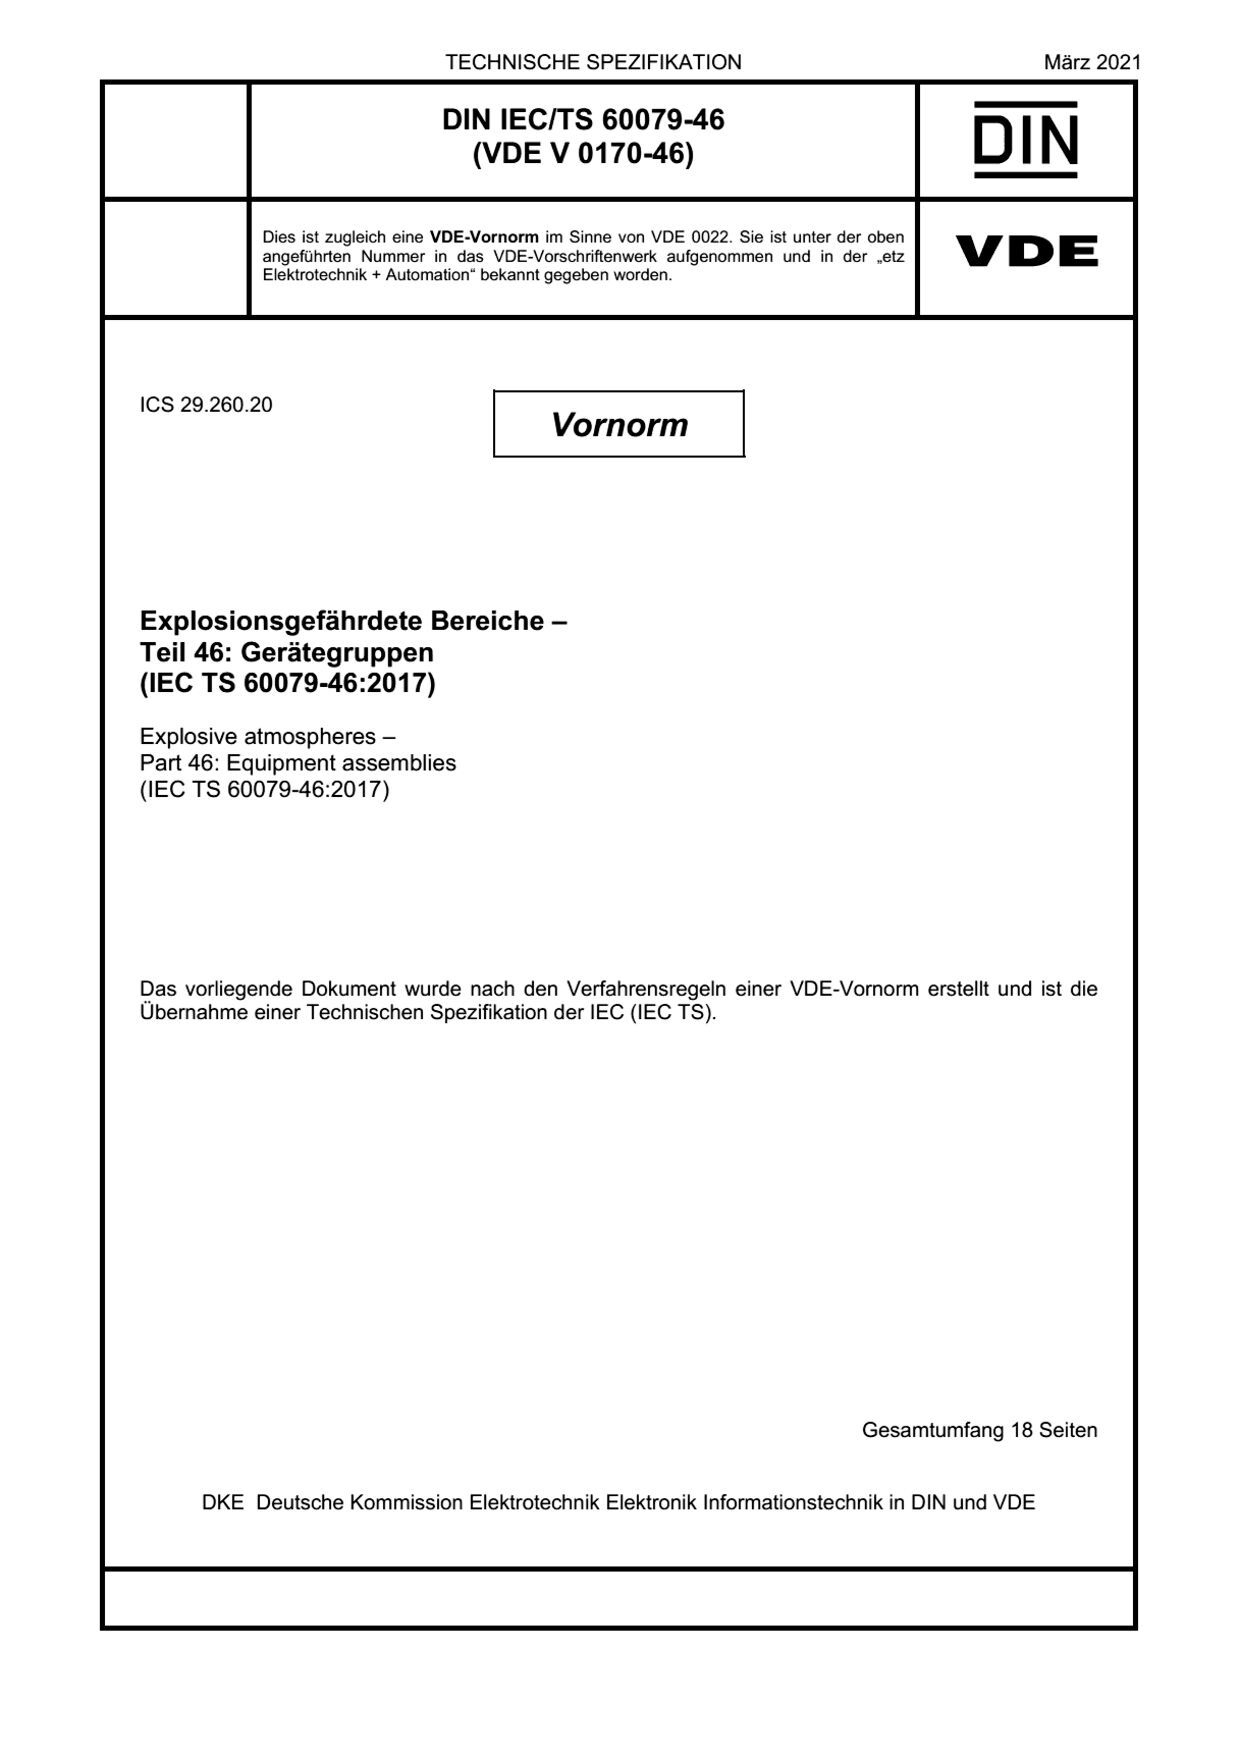 DIN IEC/TS 60079-46:2021封面图